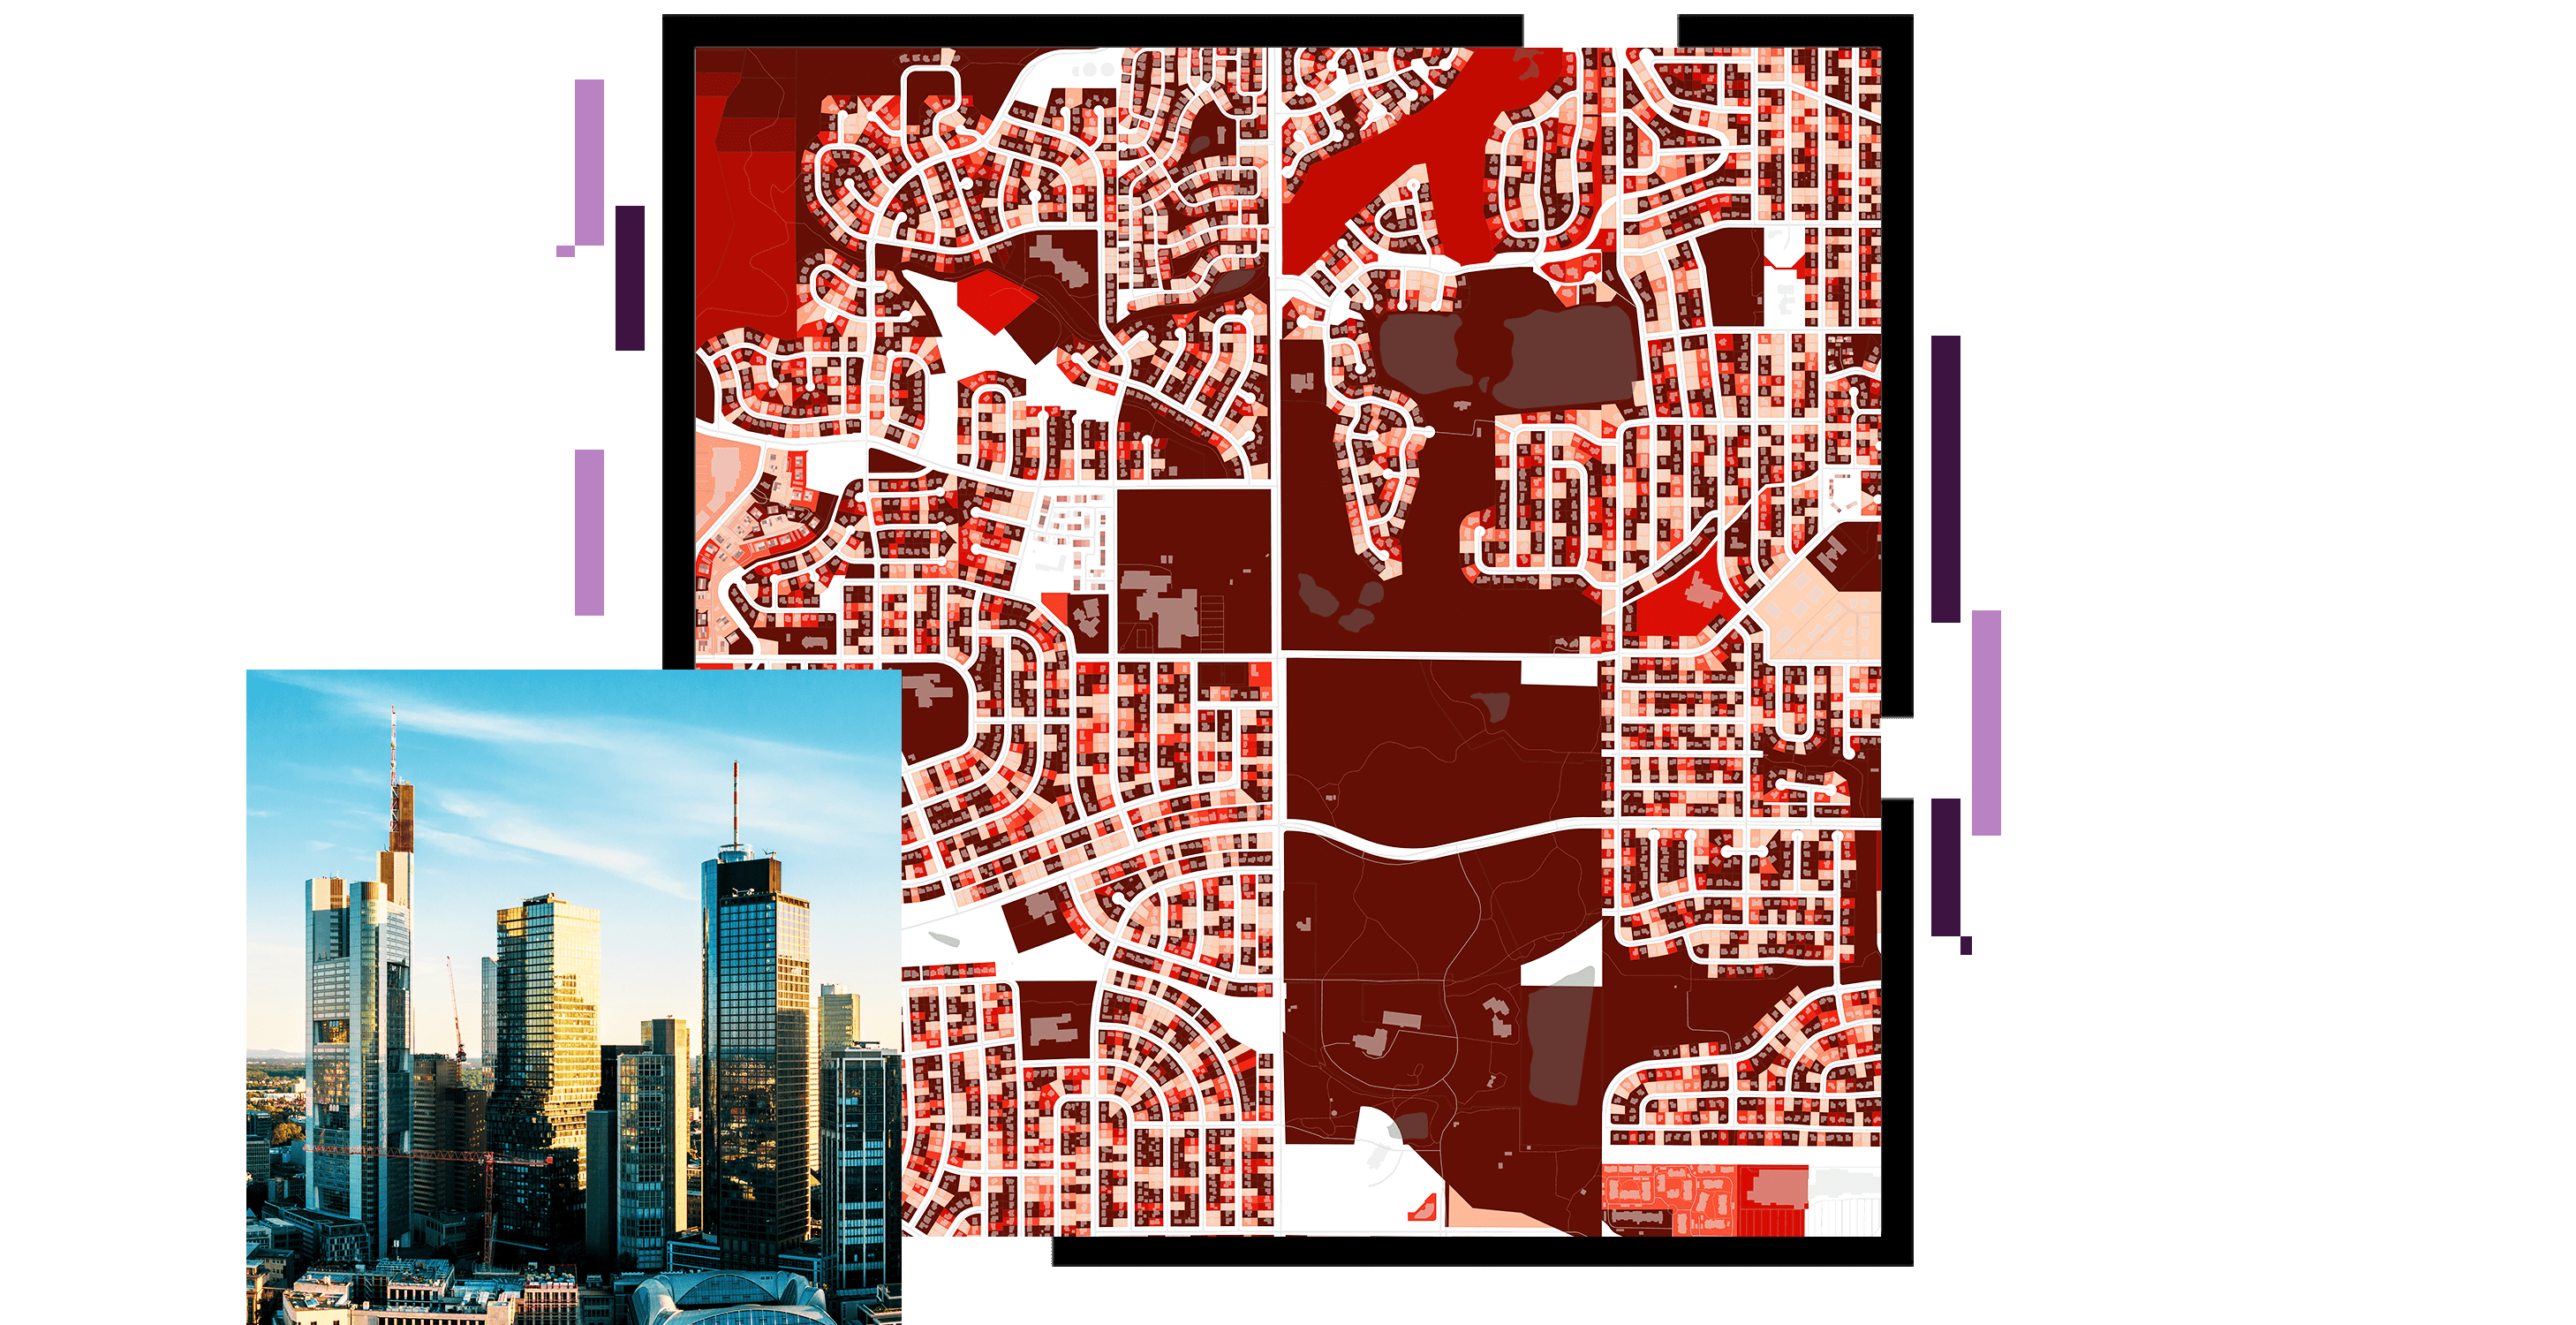 Mappa urbana in rosso scuro e bianco accanto a una piccola foto di una panorama urbano con grattacieli che riflettono l'alba sotto un cielo blu chiaro  